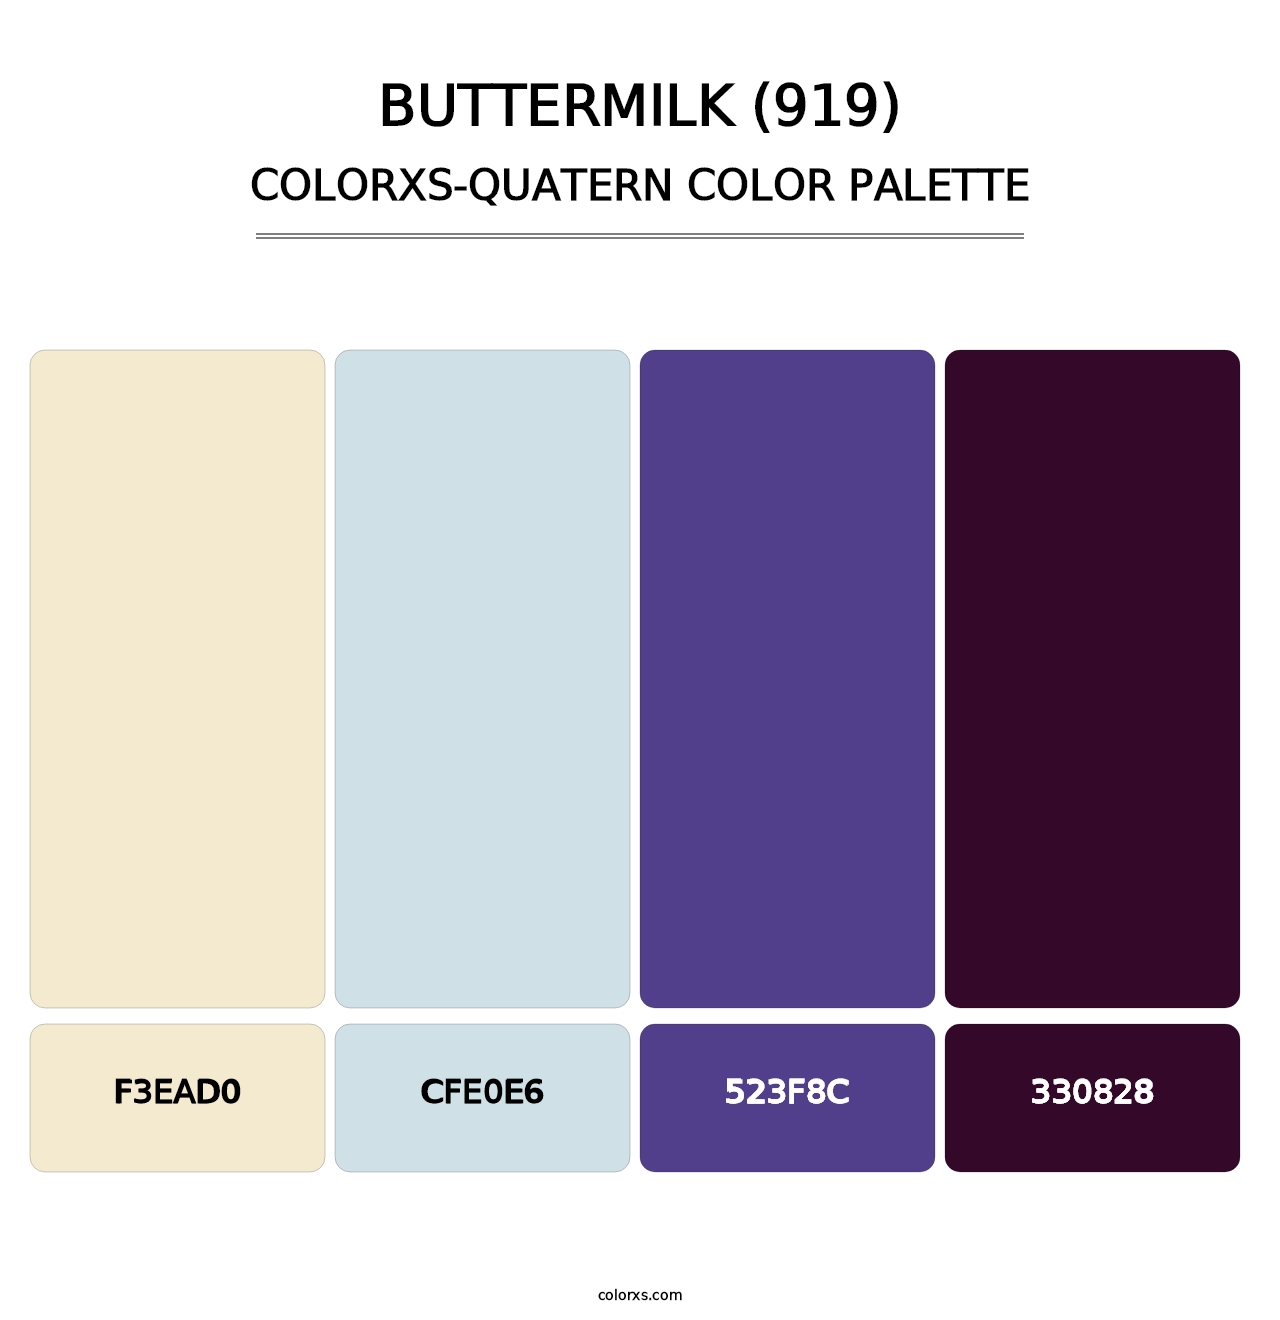 Buttermilk (919) - Colorxs Quatern Palette